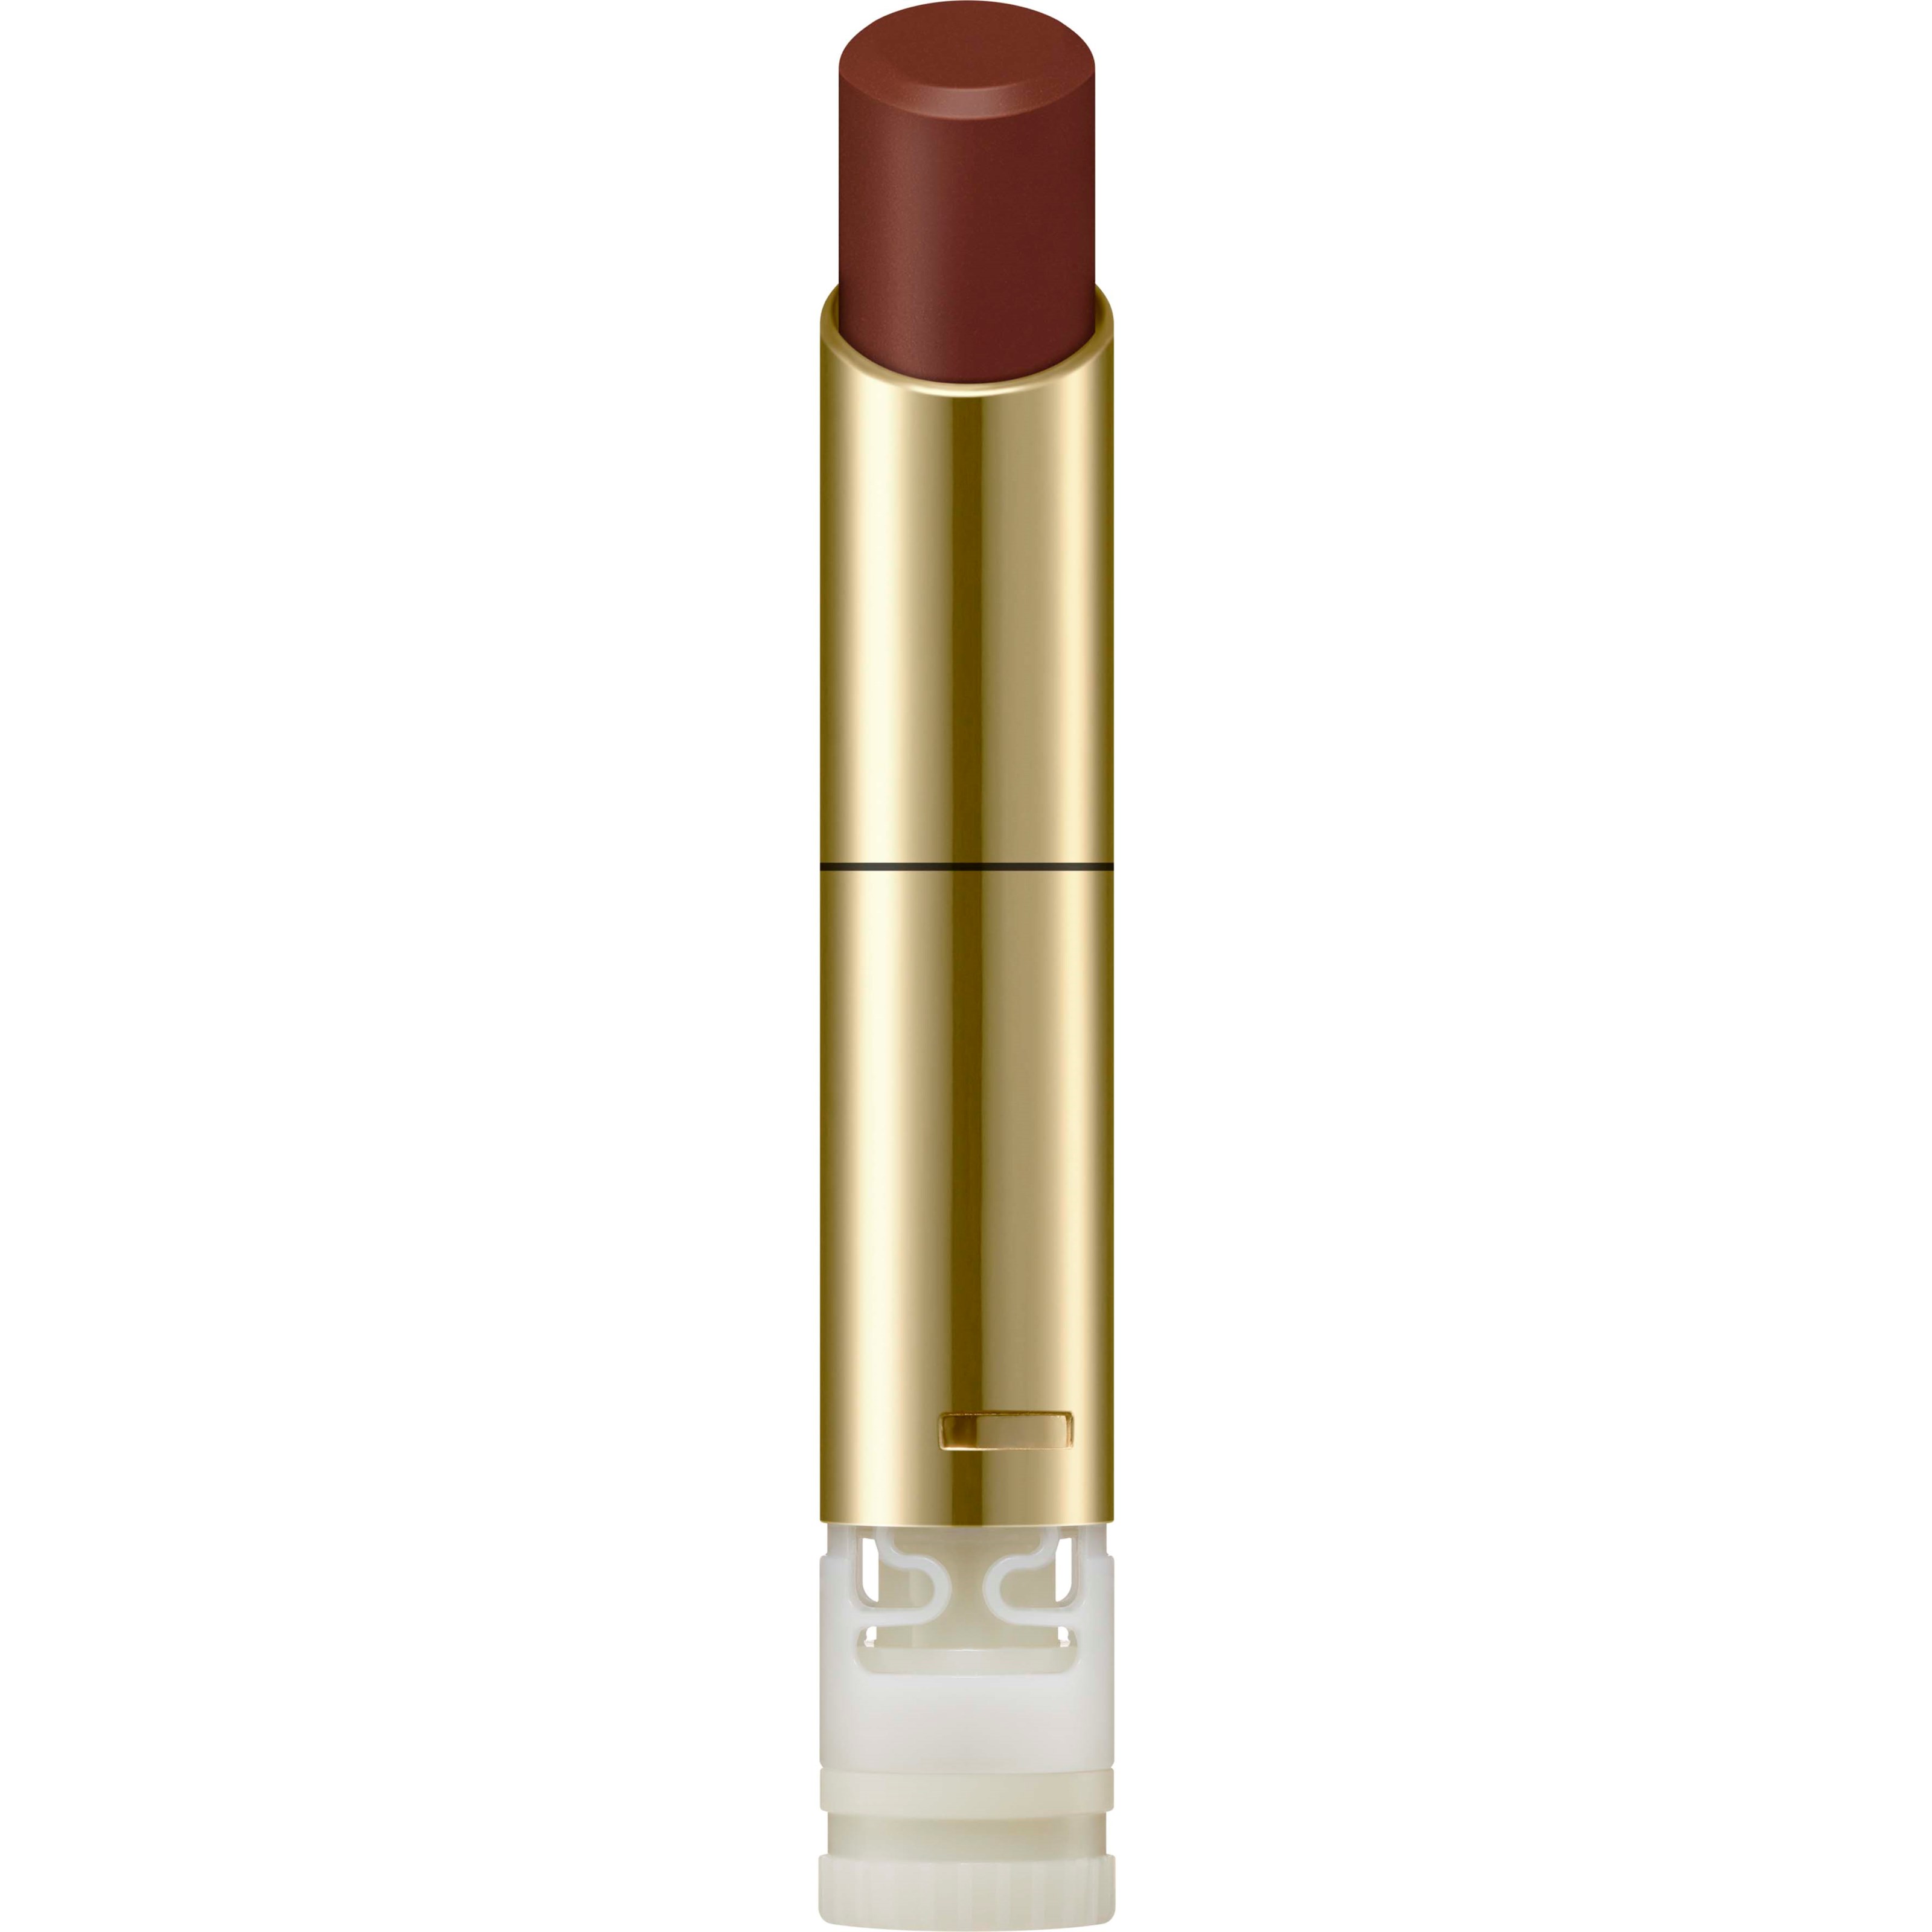 Bilde av Sensai Lasting Plump Lipstick Lp08 Terracotta Red